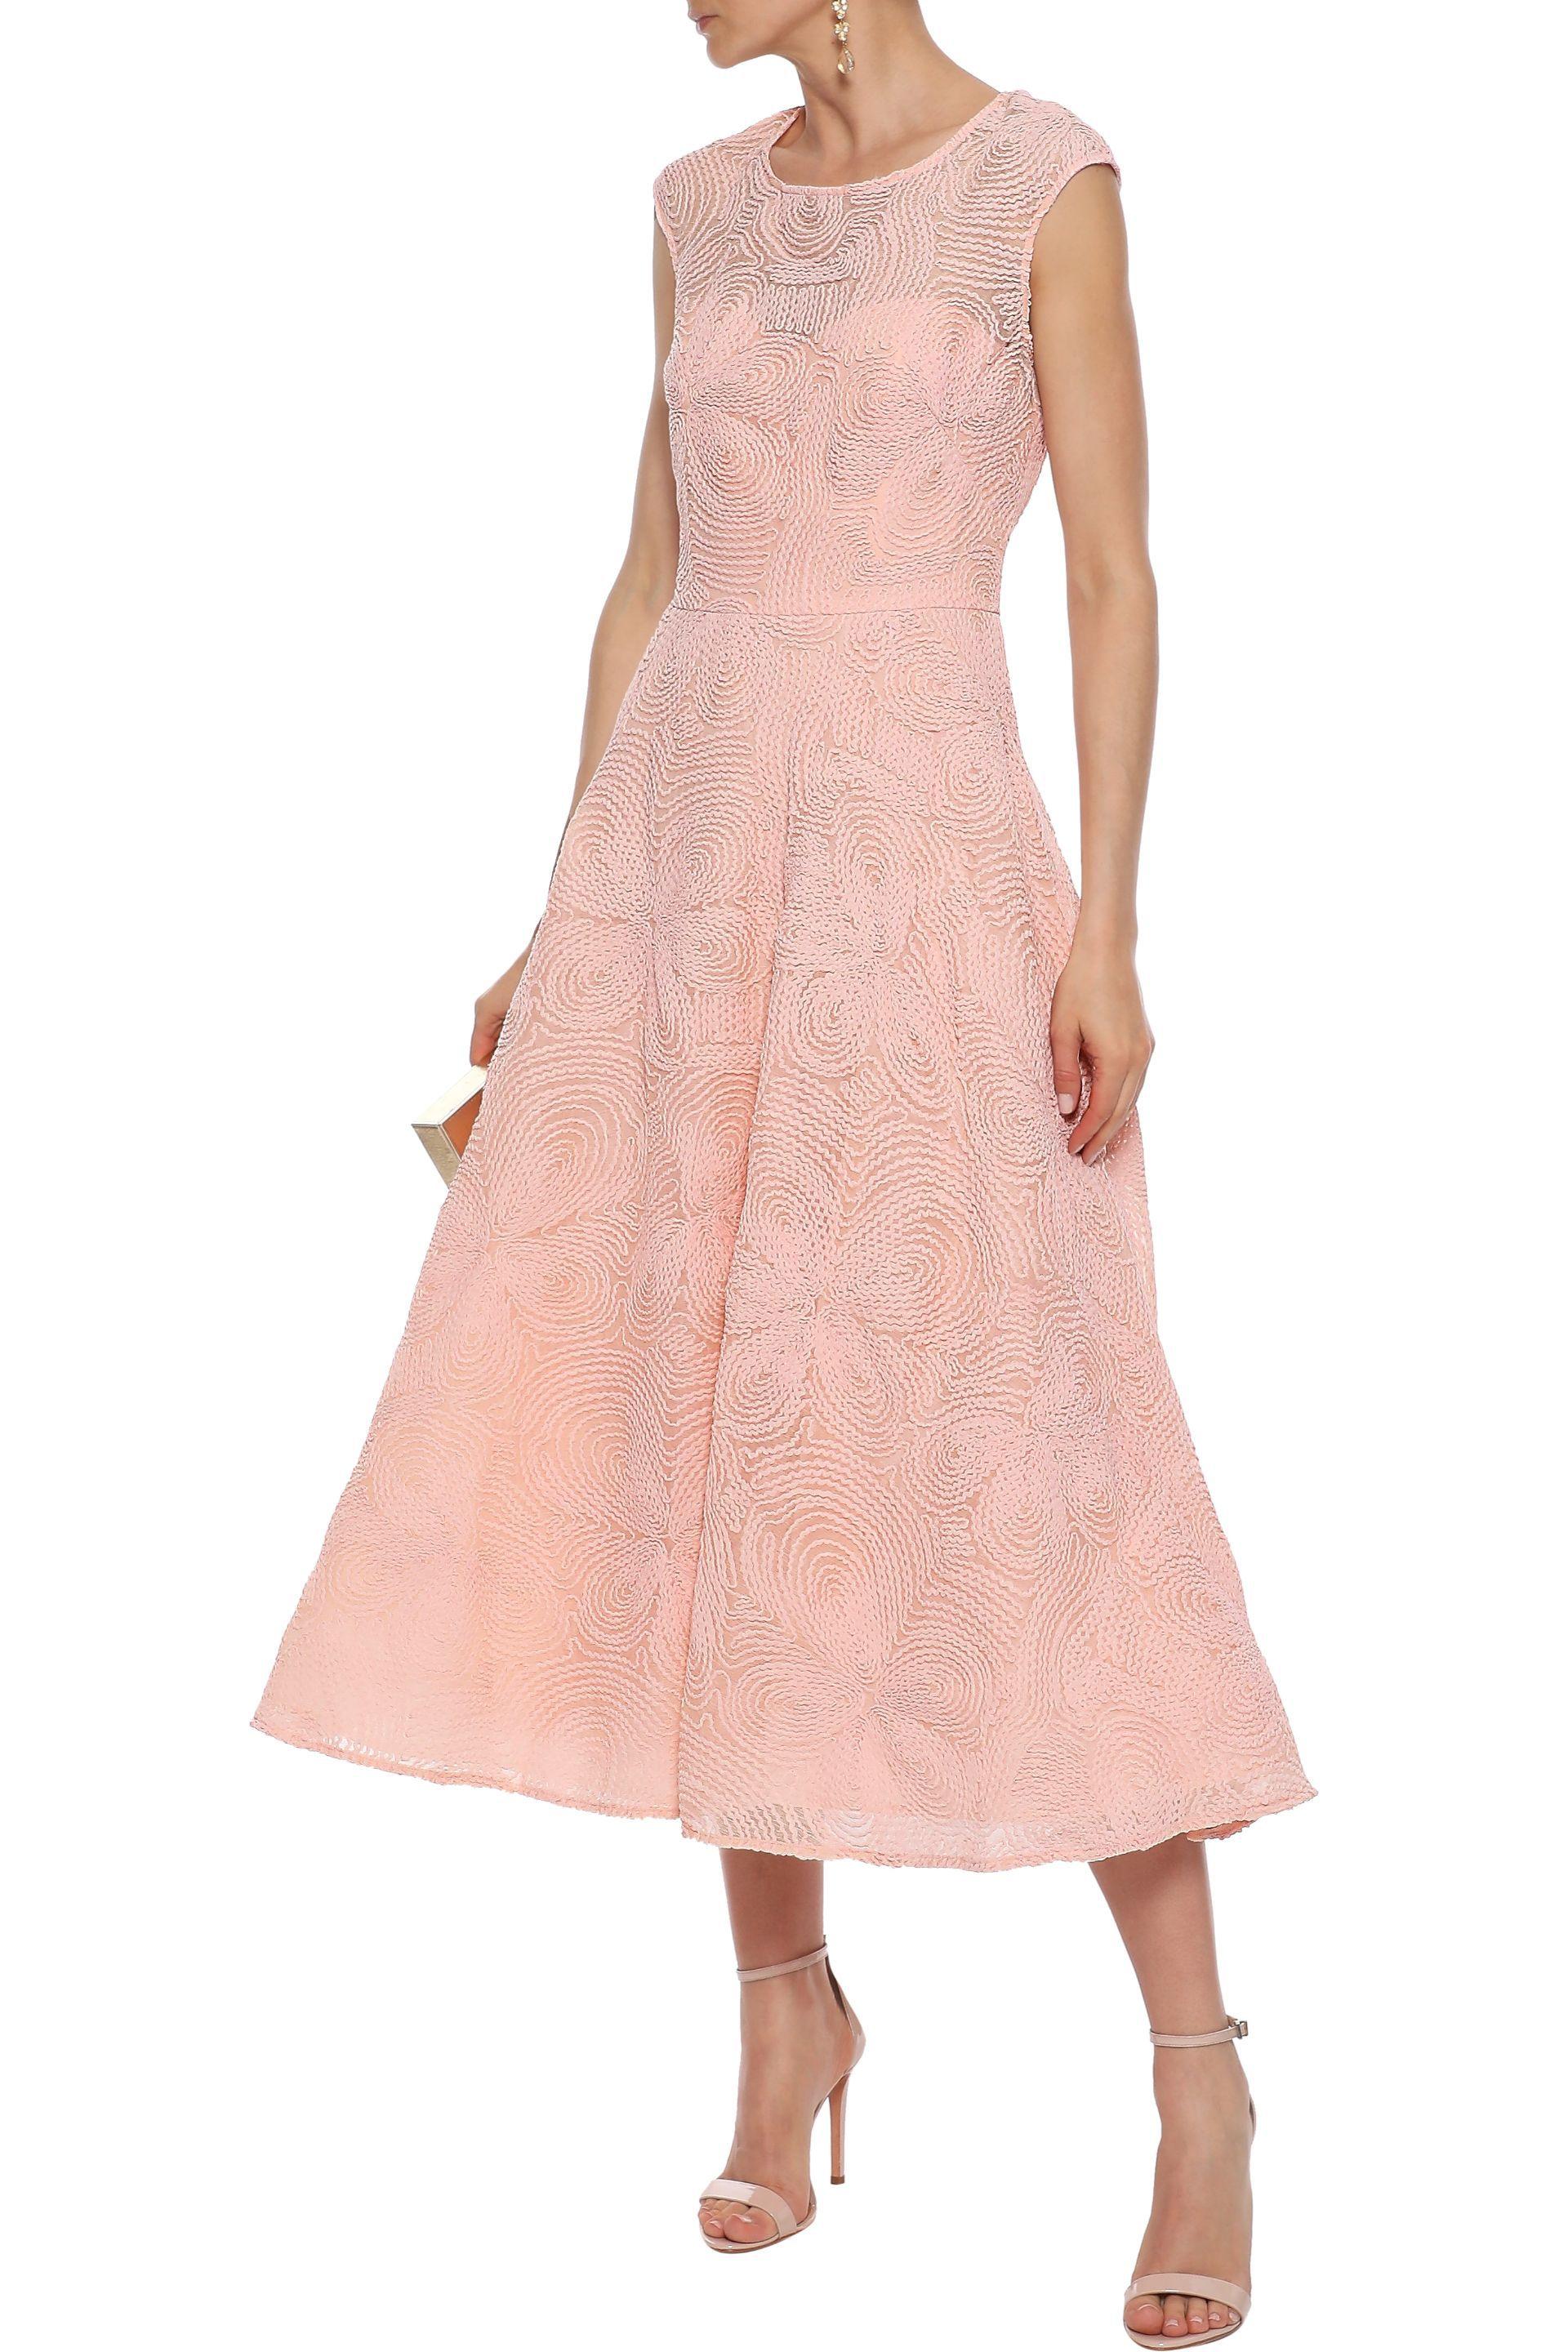 guess pink lace dress